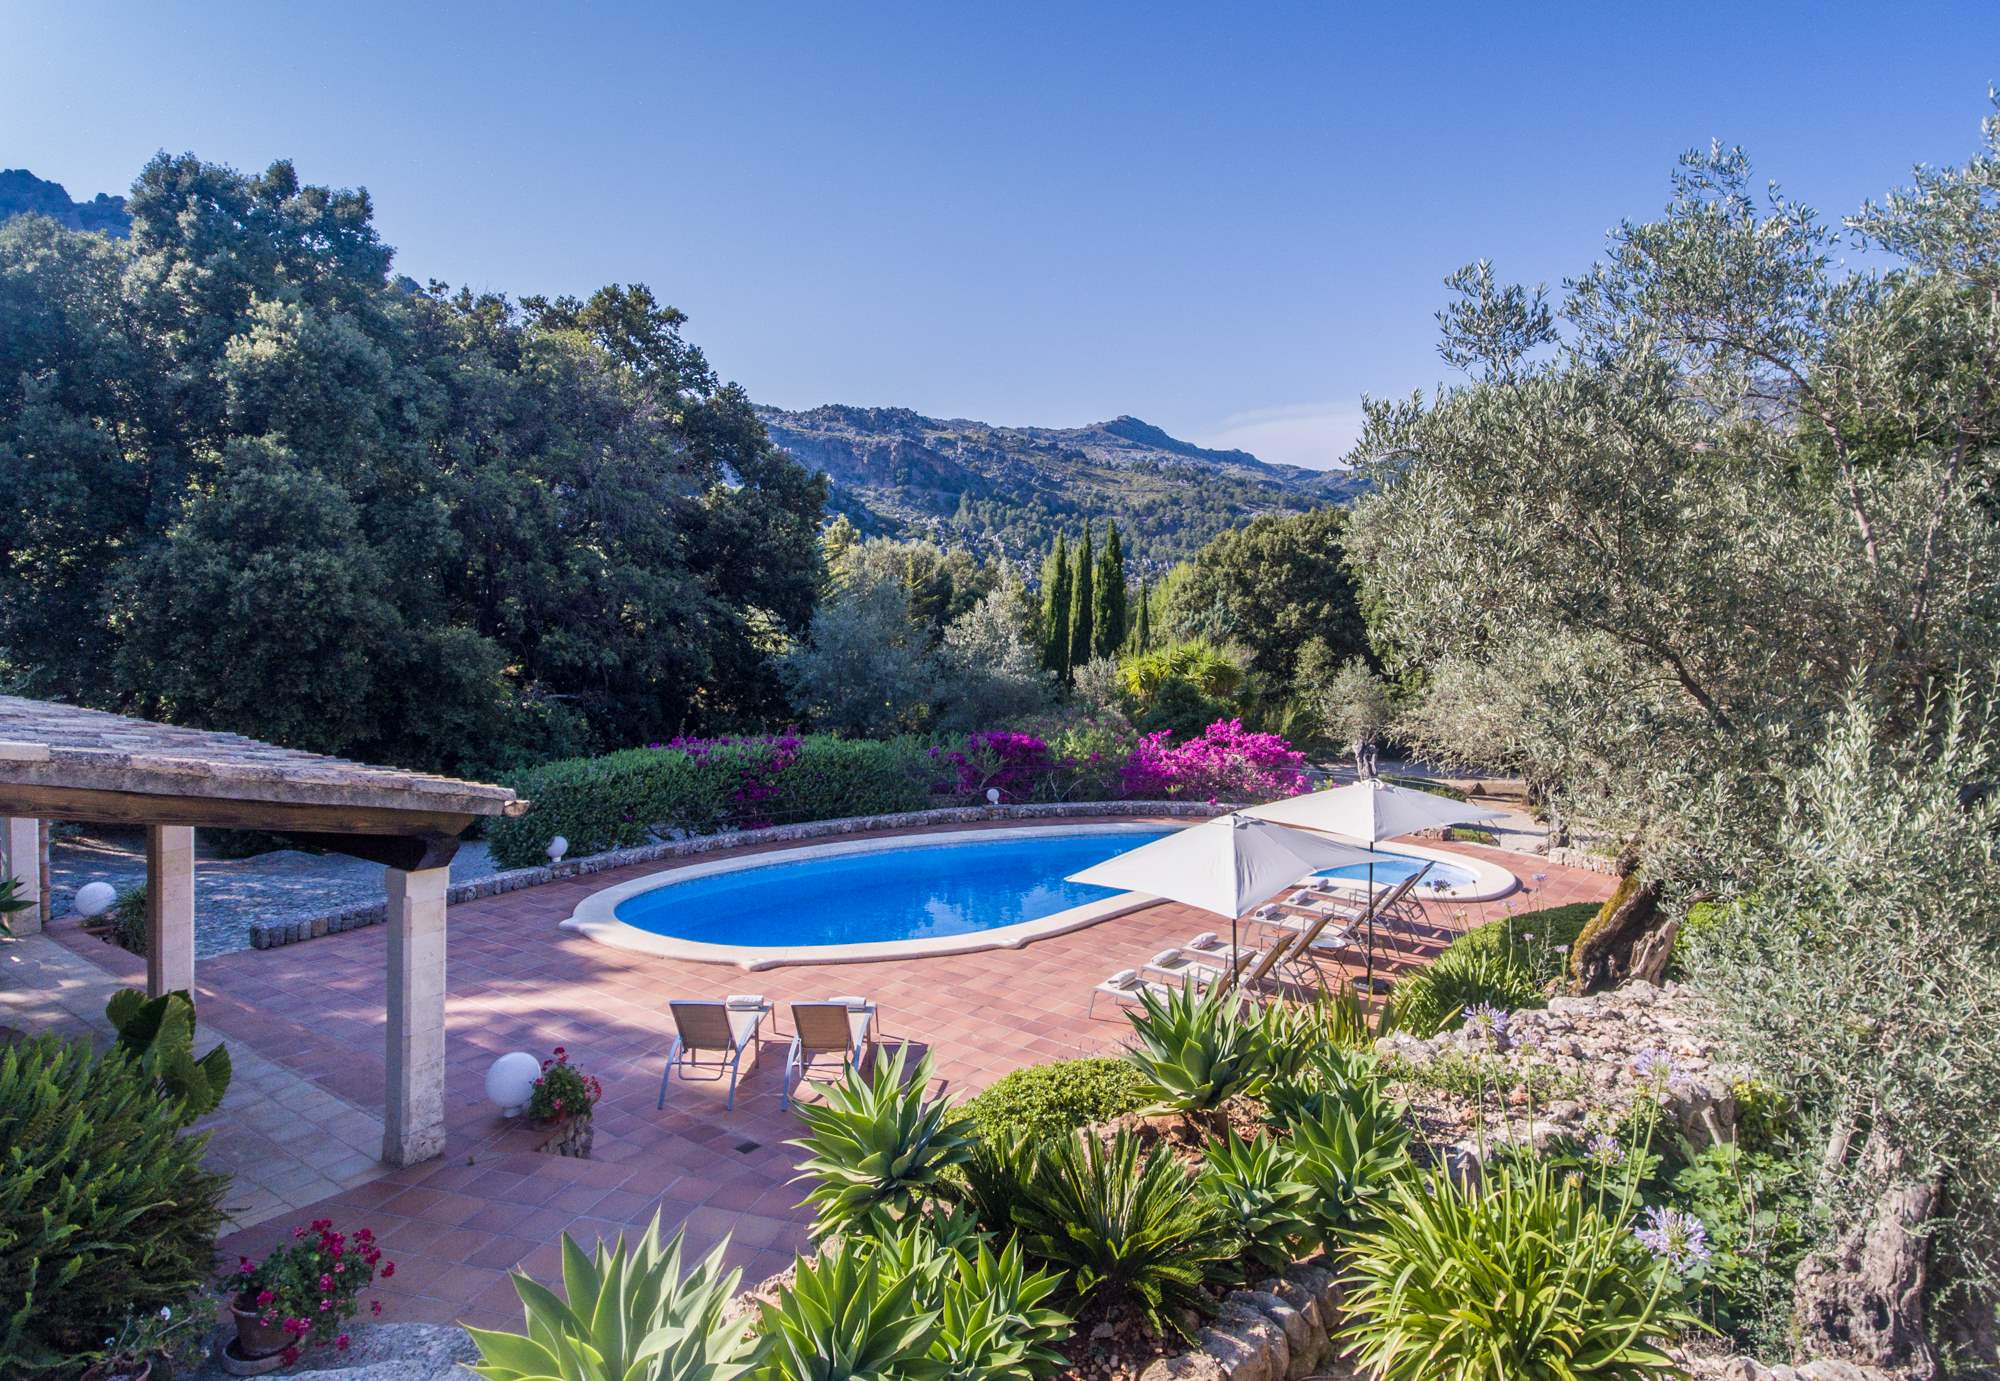 Es Clotal, 4 bedroom, 4 bedroom villa in Pollensa & Puerto Pollensa, Majorca Photo #9